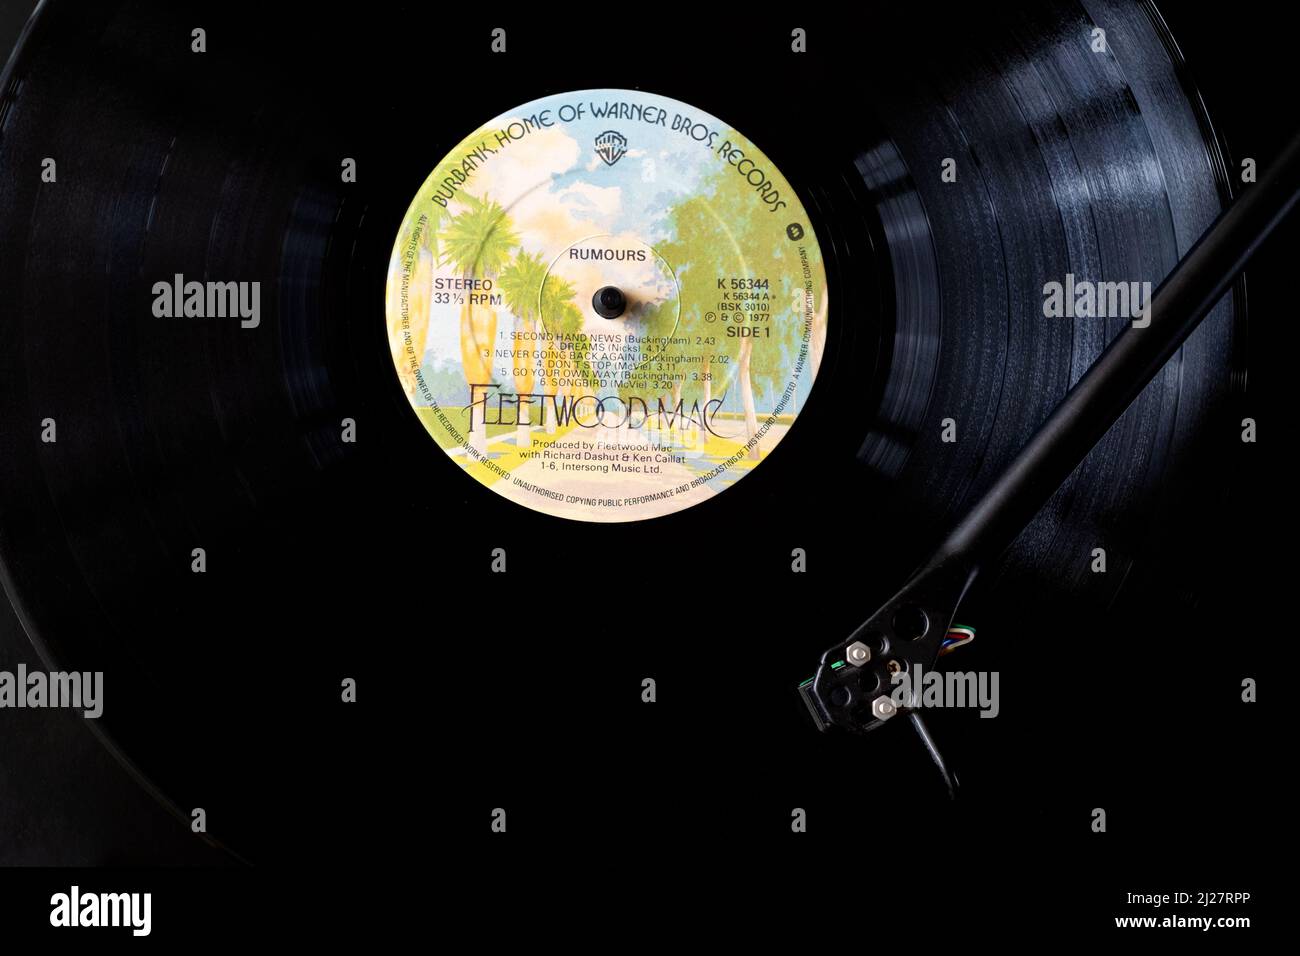 Vista aérea de Fleetwood Macs vinilo LP Rumors. El registro se muestra en un jugador de discos o en una plataforma de discos con la aguja se mueve a través del registro Foto de stock